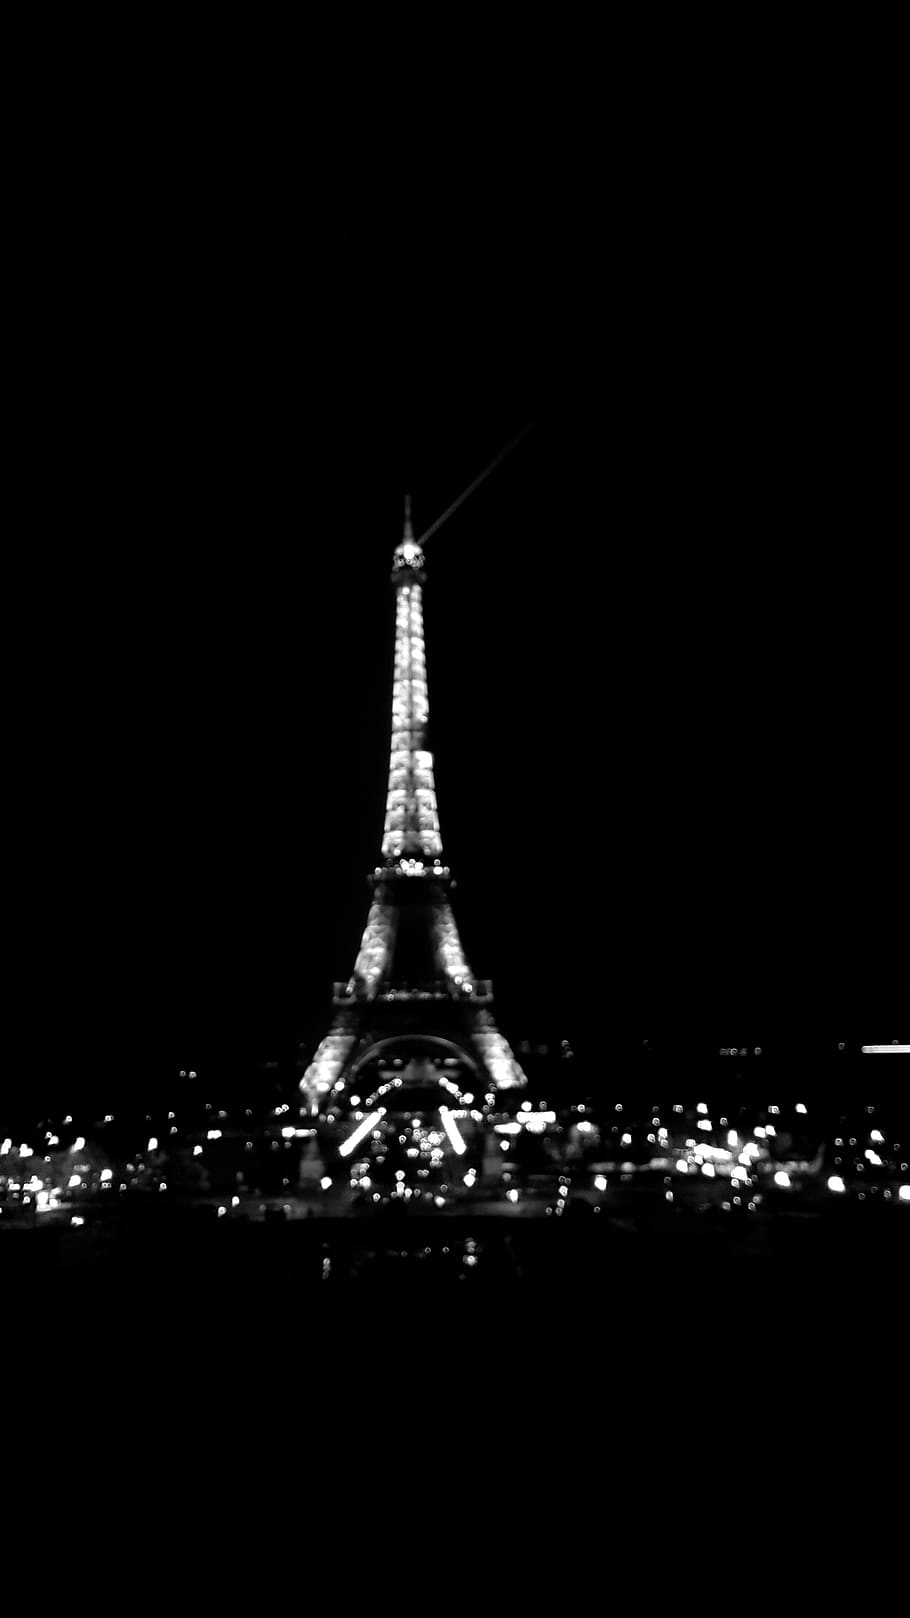 Eiffeltower 1080P, 2K, 4K, 5K HD wallpapers free download | Wallpaper Flare